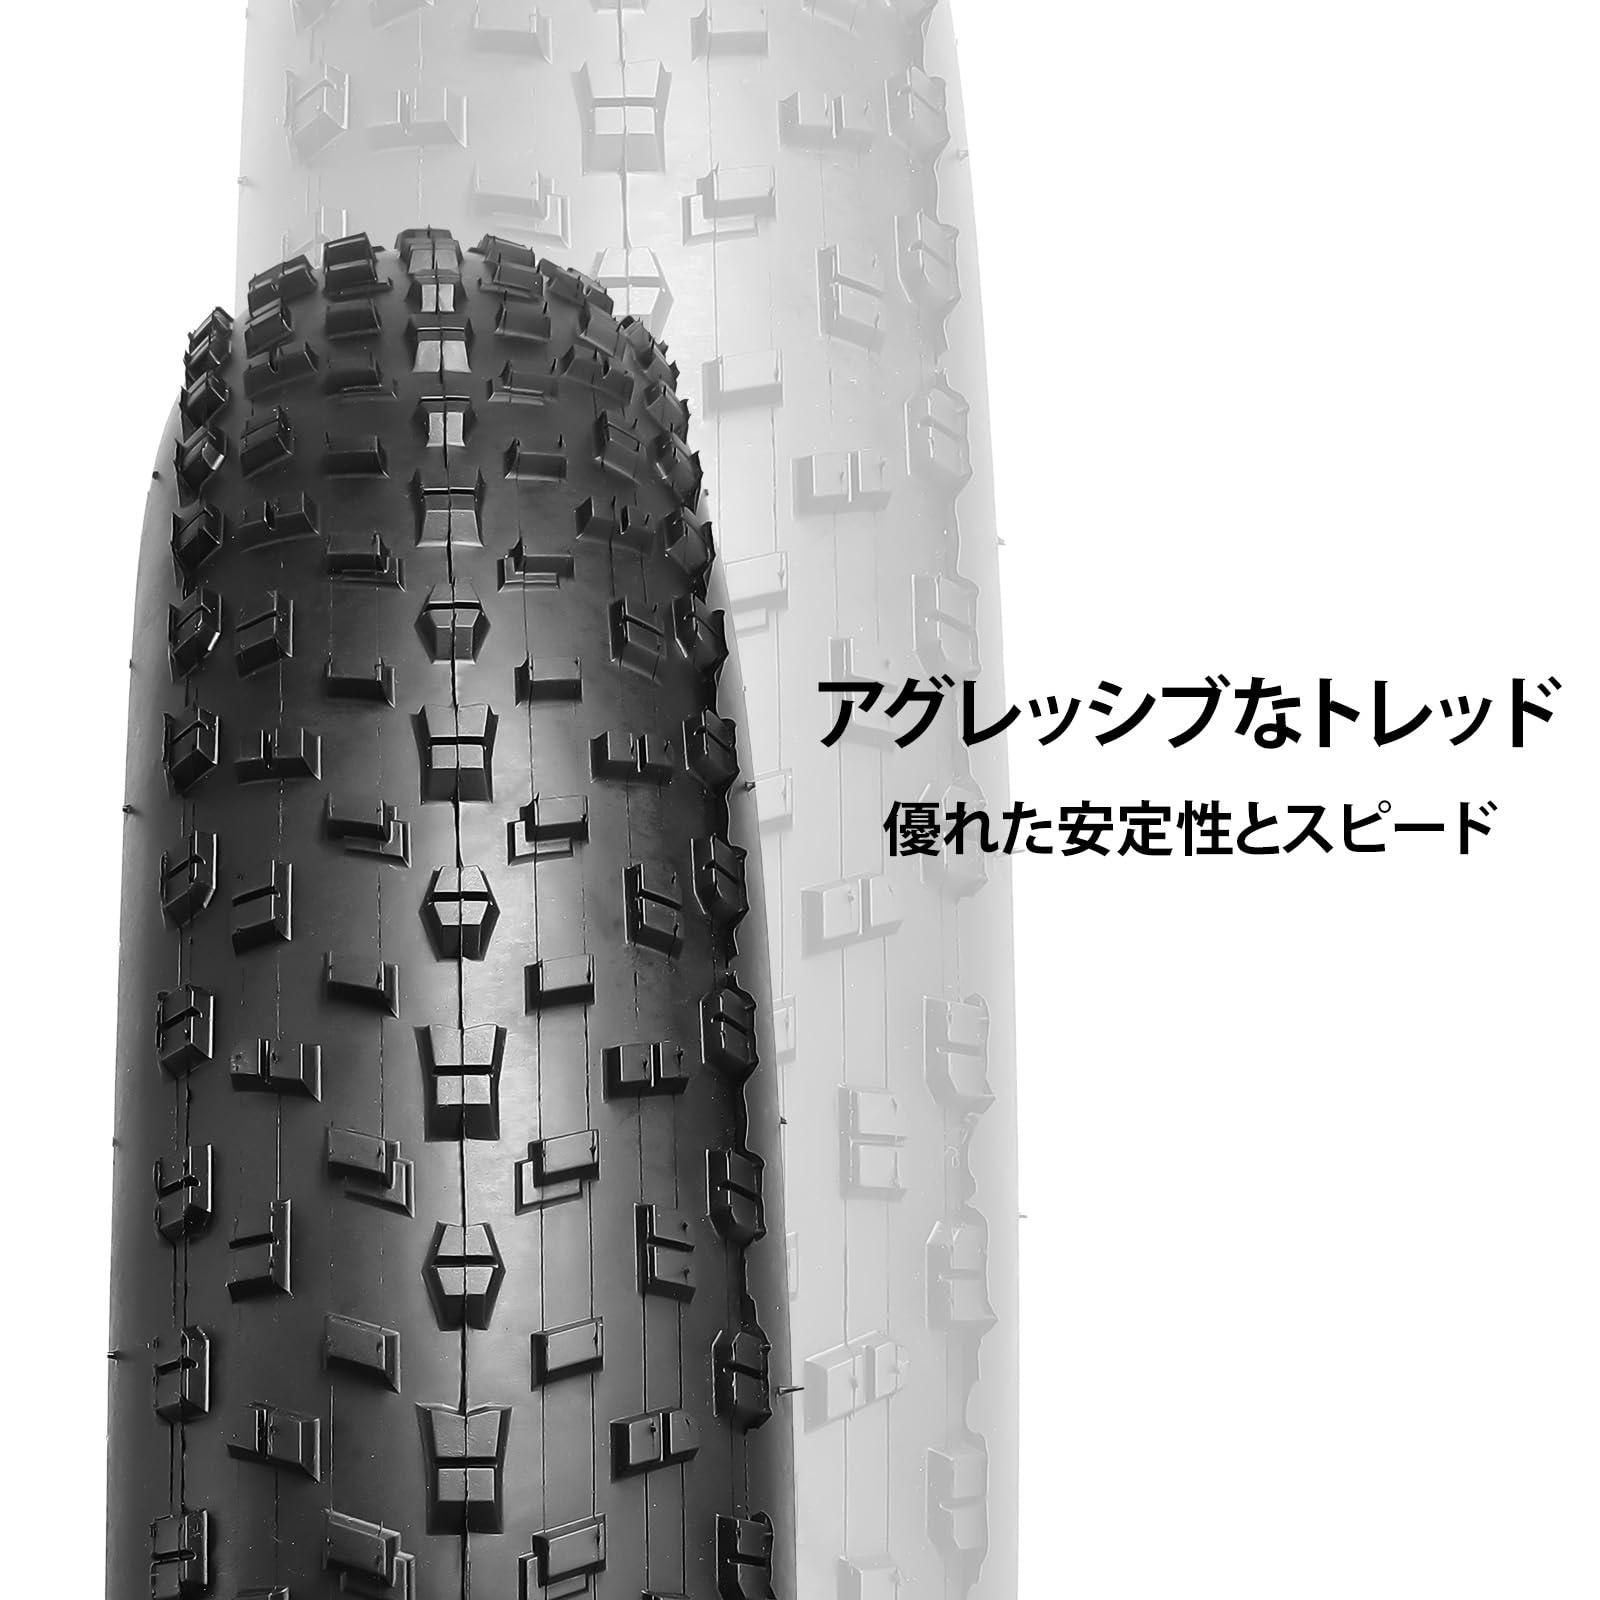 MOHEGIA ファットタイヤ: 20 x 4.0インチ ファットバイクタイヤ - 折りたたみビードの電動自転車タイヤ - 広いマウンテンスノーバイクに対応 - くろい 2